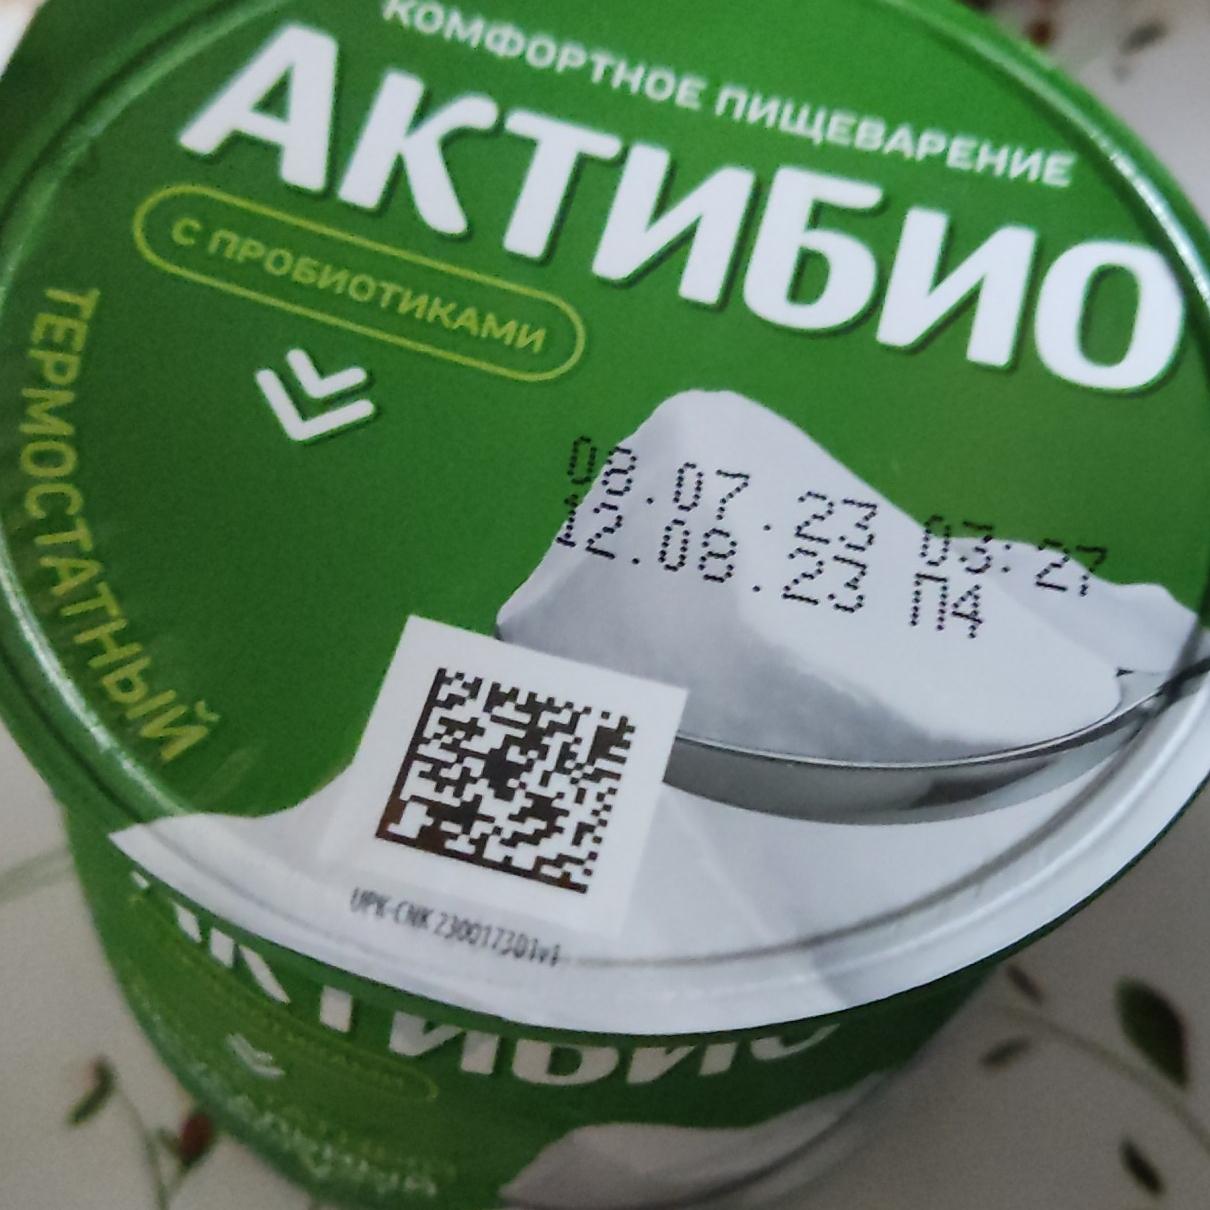 Фото - Био йогурт с пробиотиками натуральный ложковой Актибио Данон Россия Самара